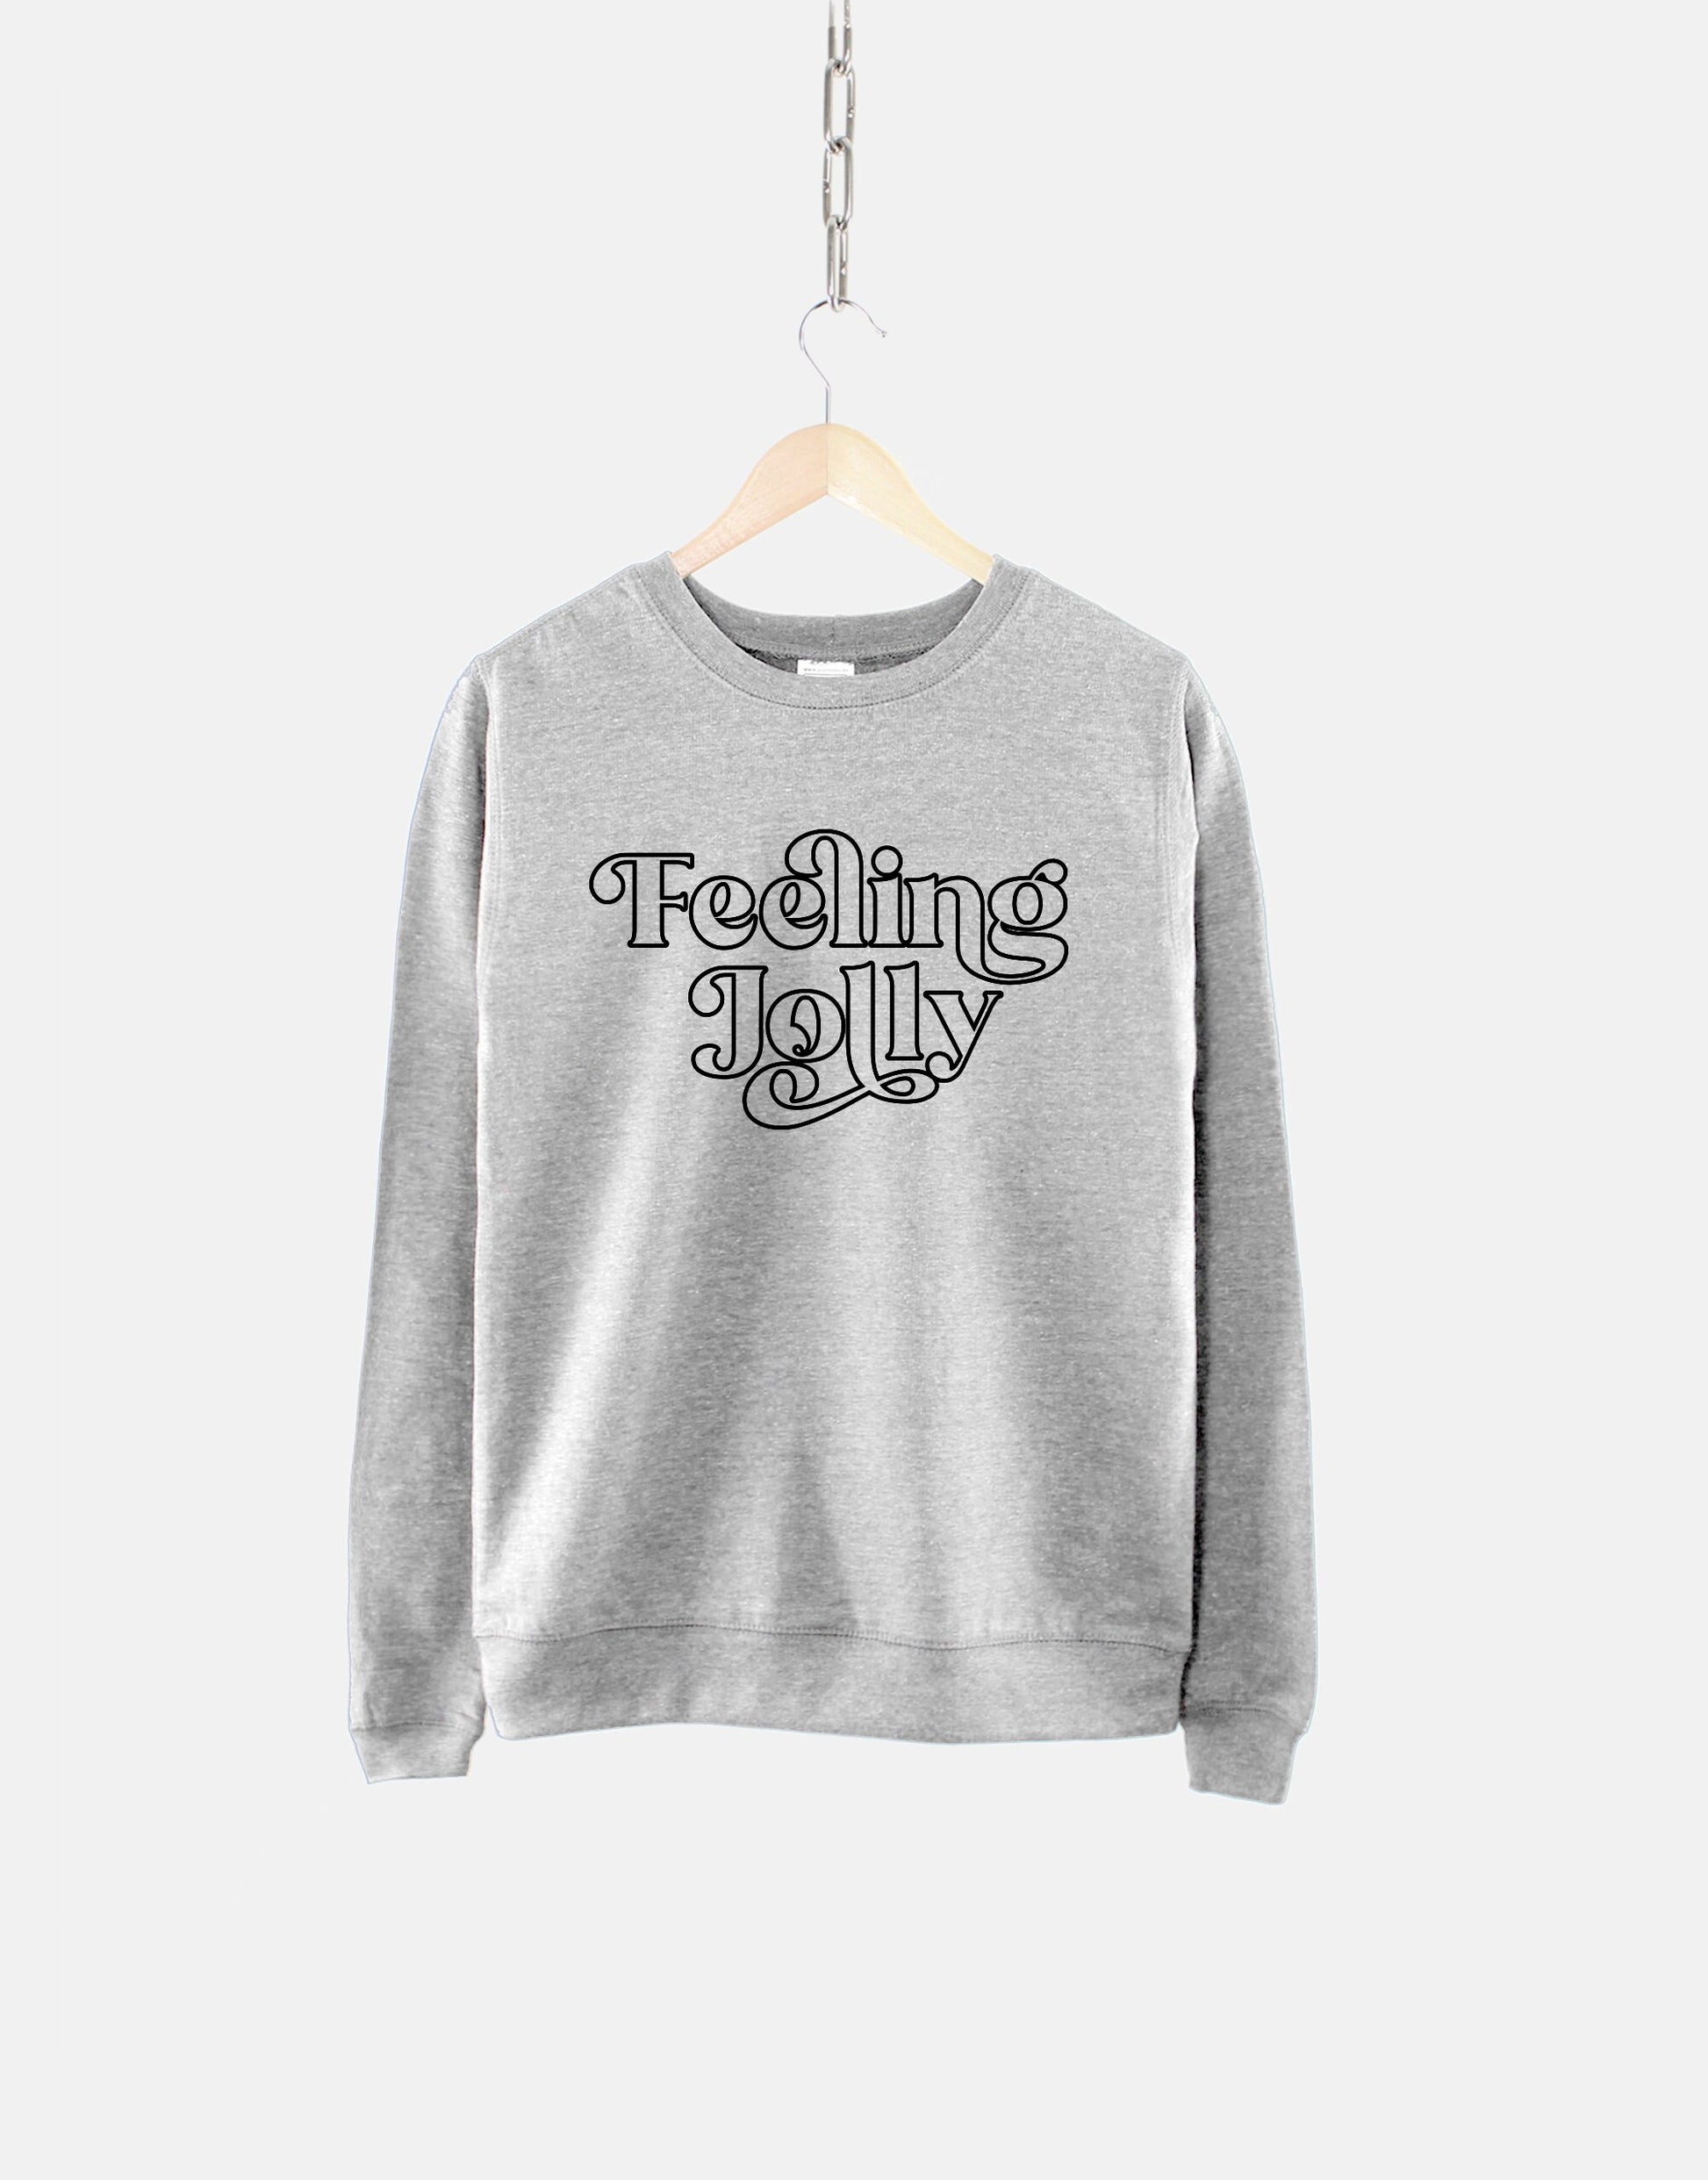 Feeling - Shop - Jolly – Qurious Retro Christmas Christmas Sweatshirt Chri Sweatshirt